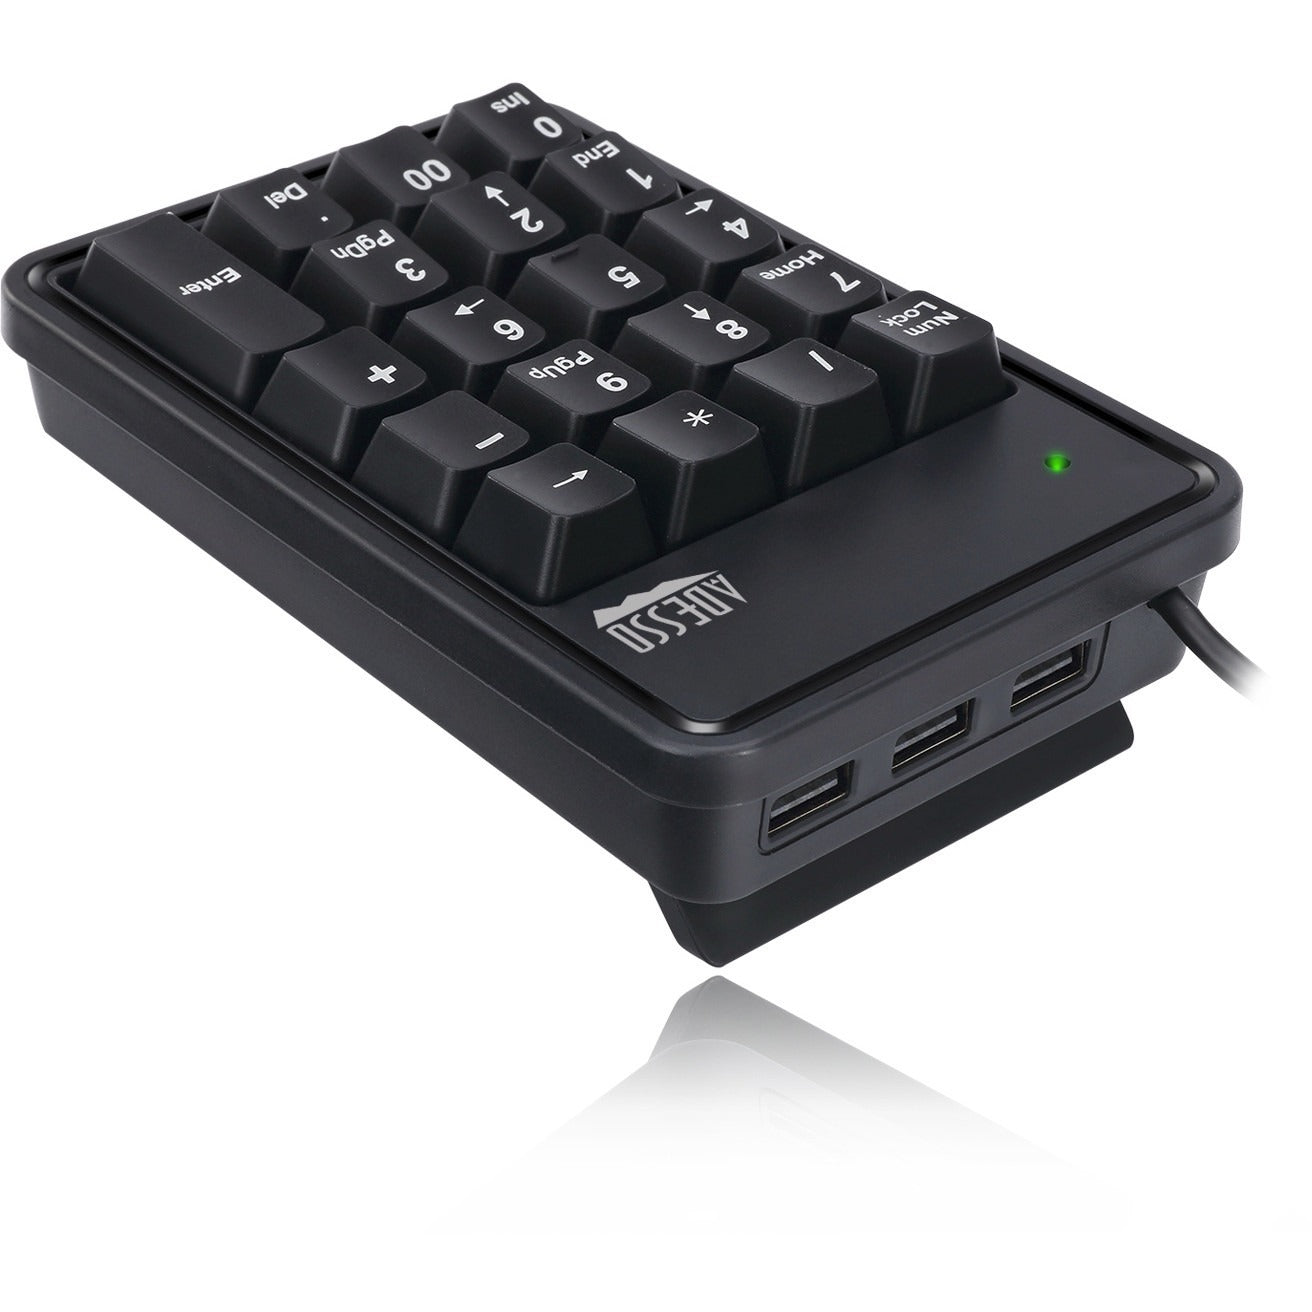 Adesso 19-Key Mechanical Keypad with 3-Port USB Hub SpadezStore